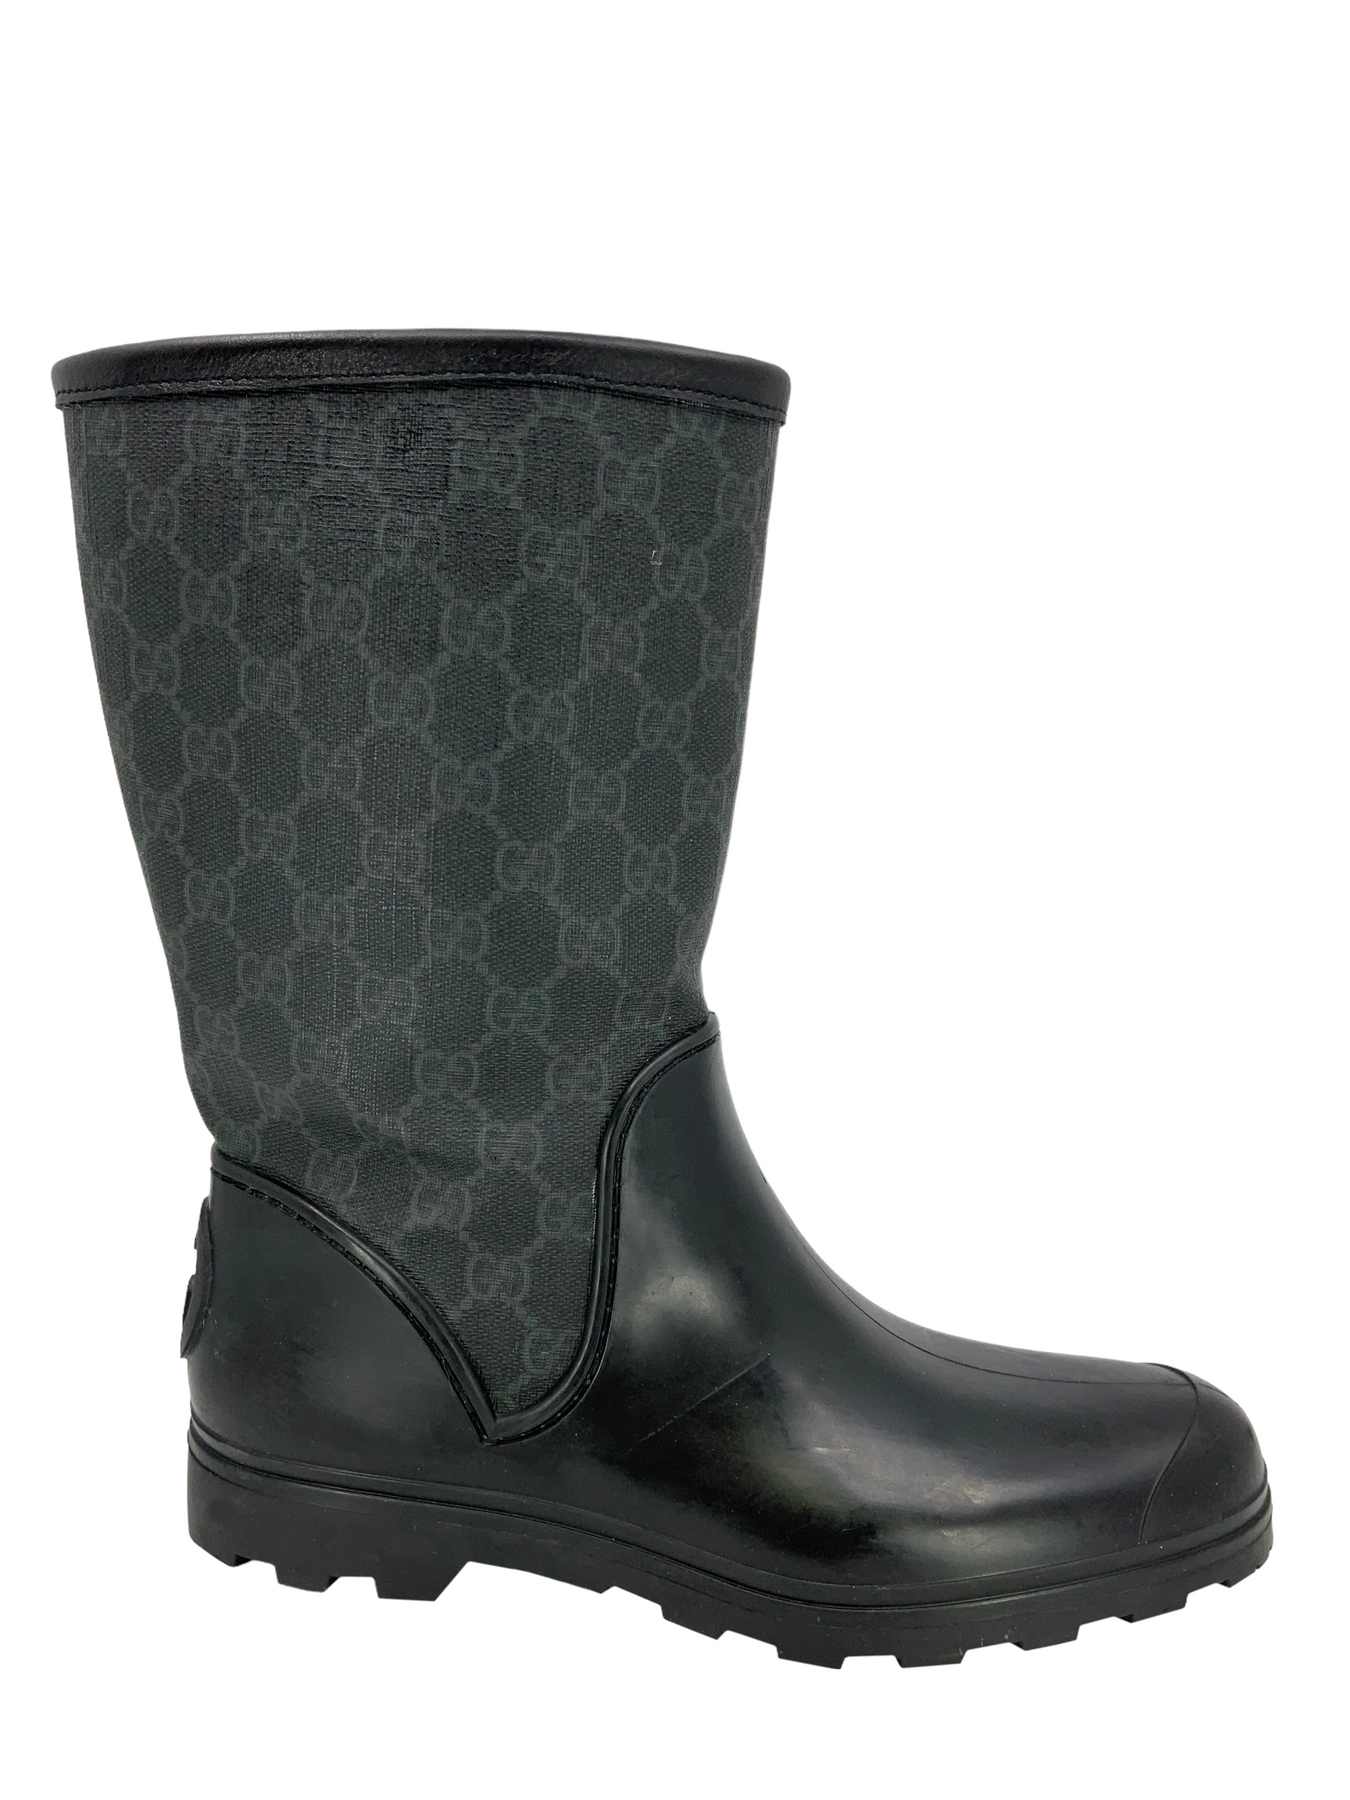 black gucci rain boots size 9